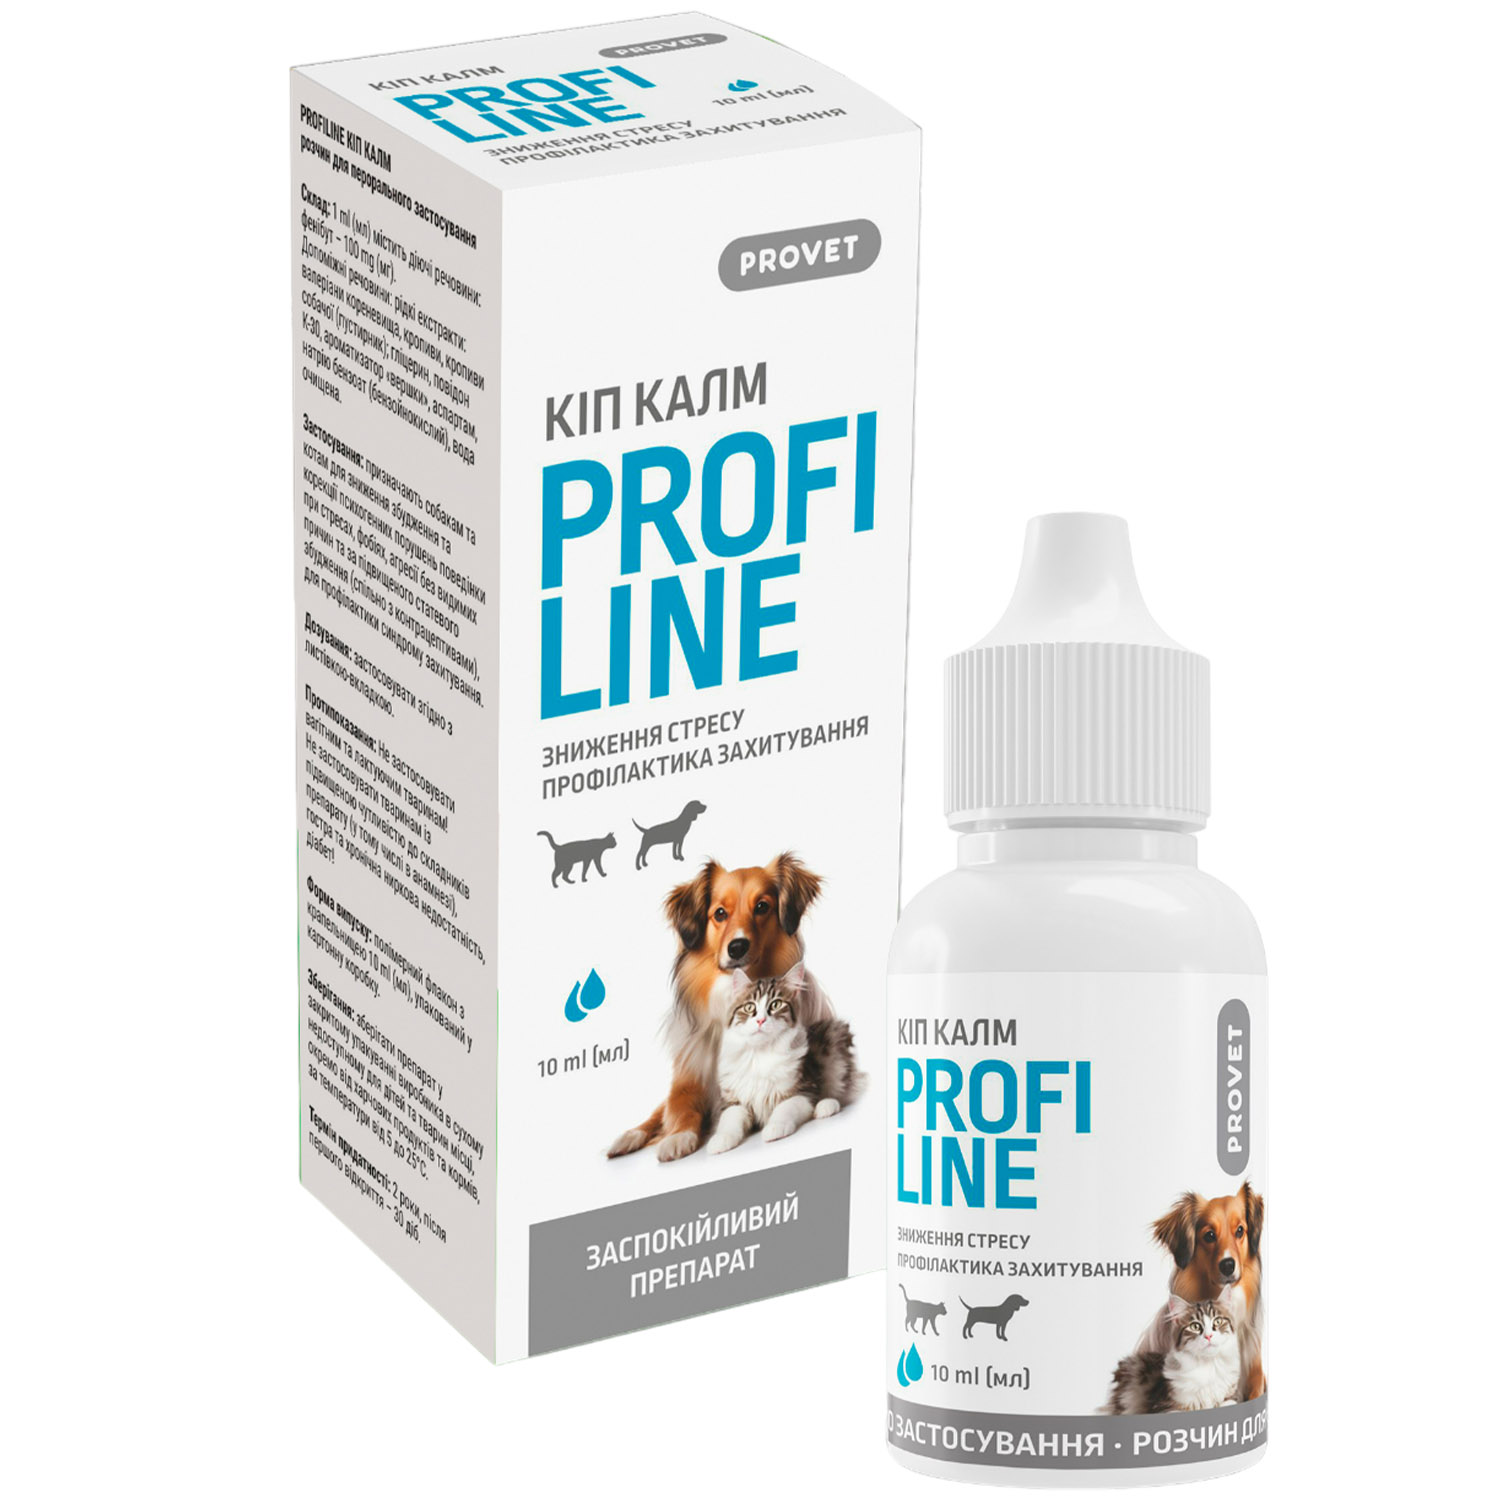 Заспокійливий препарат ProVET Profiline Kіп Калм для зниження стресу та профілактики захитування для котів та собак 10 мл - фото 1